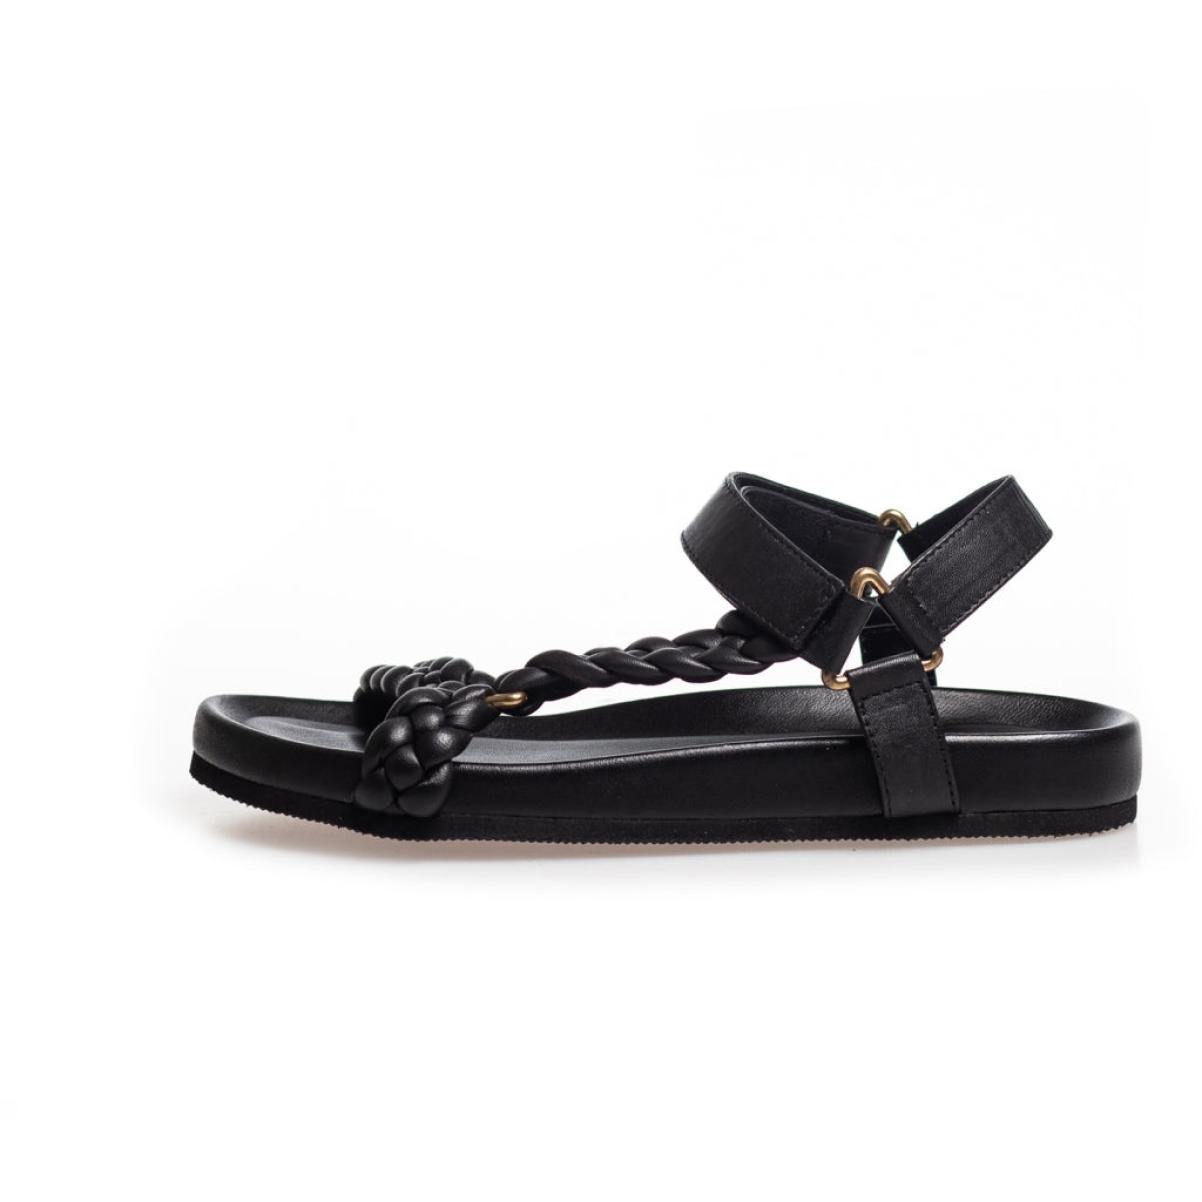 Women Sandals Copenhagen Shoes Time-Limited Discount Beach - Black